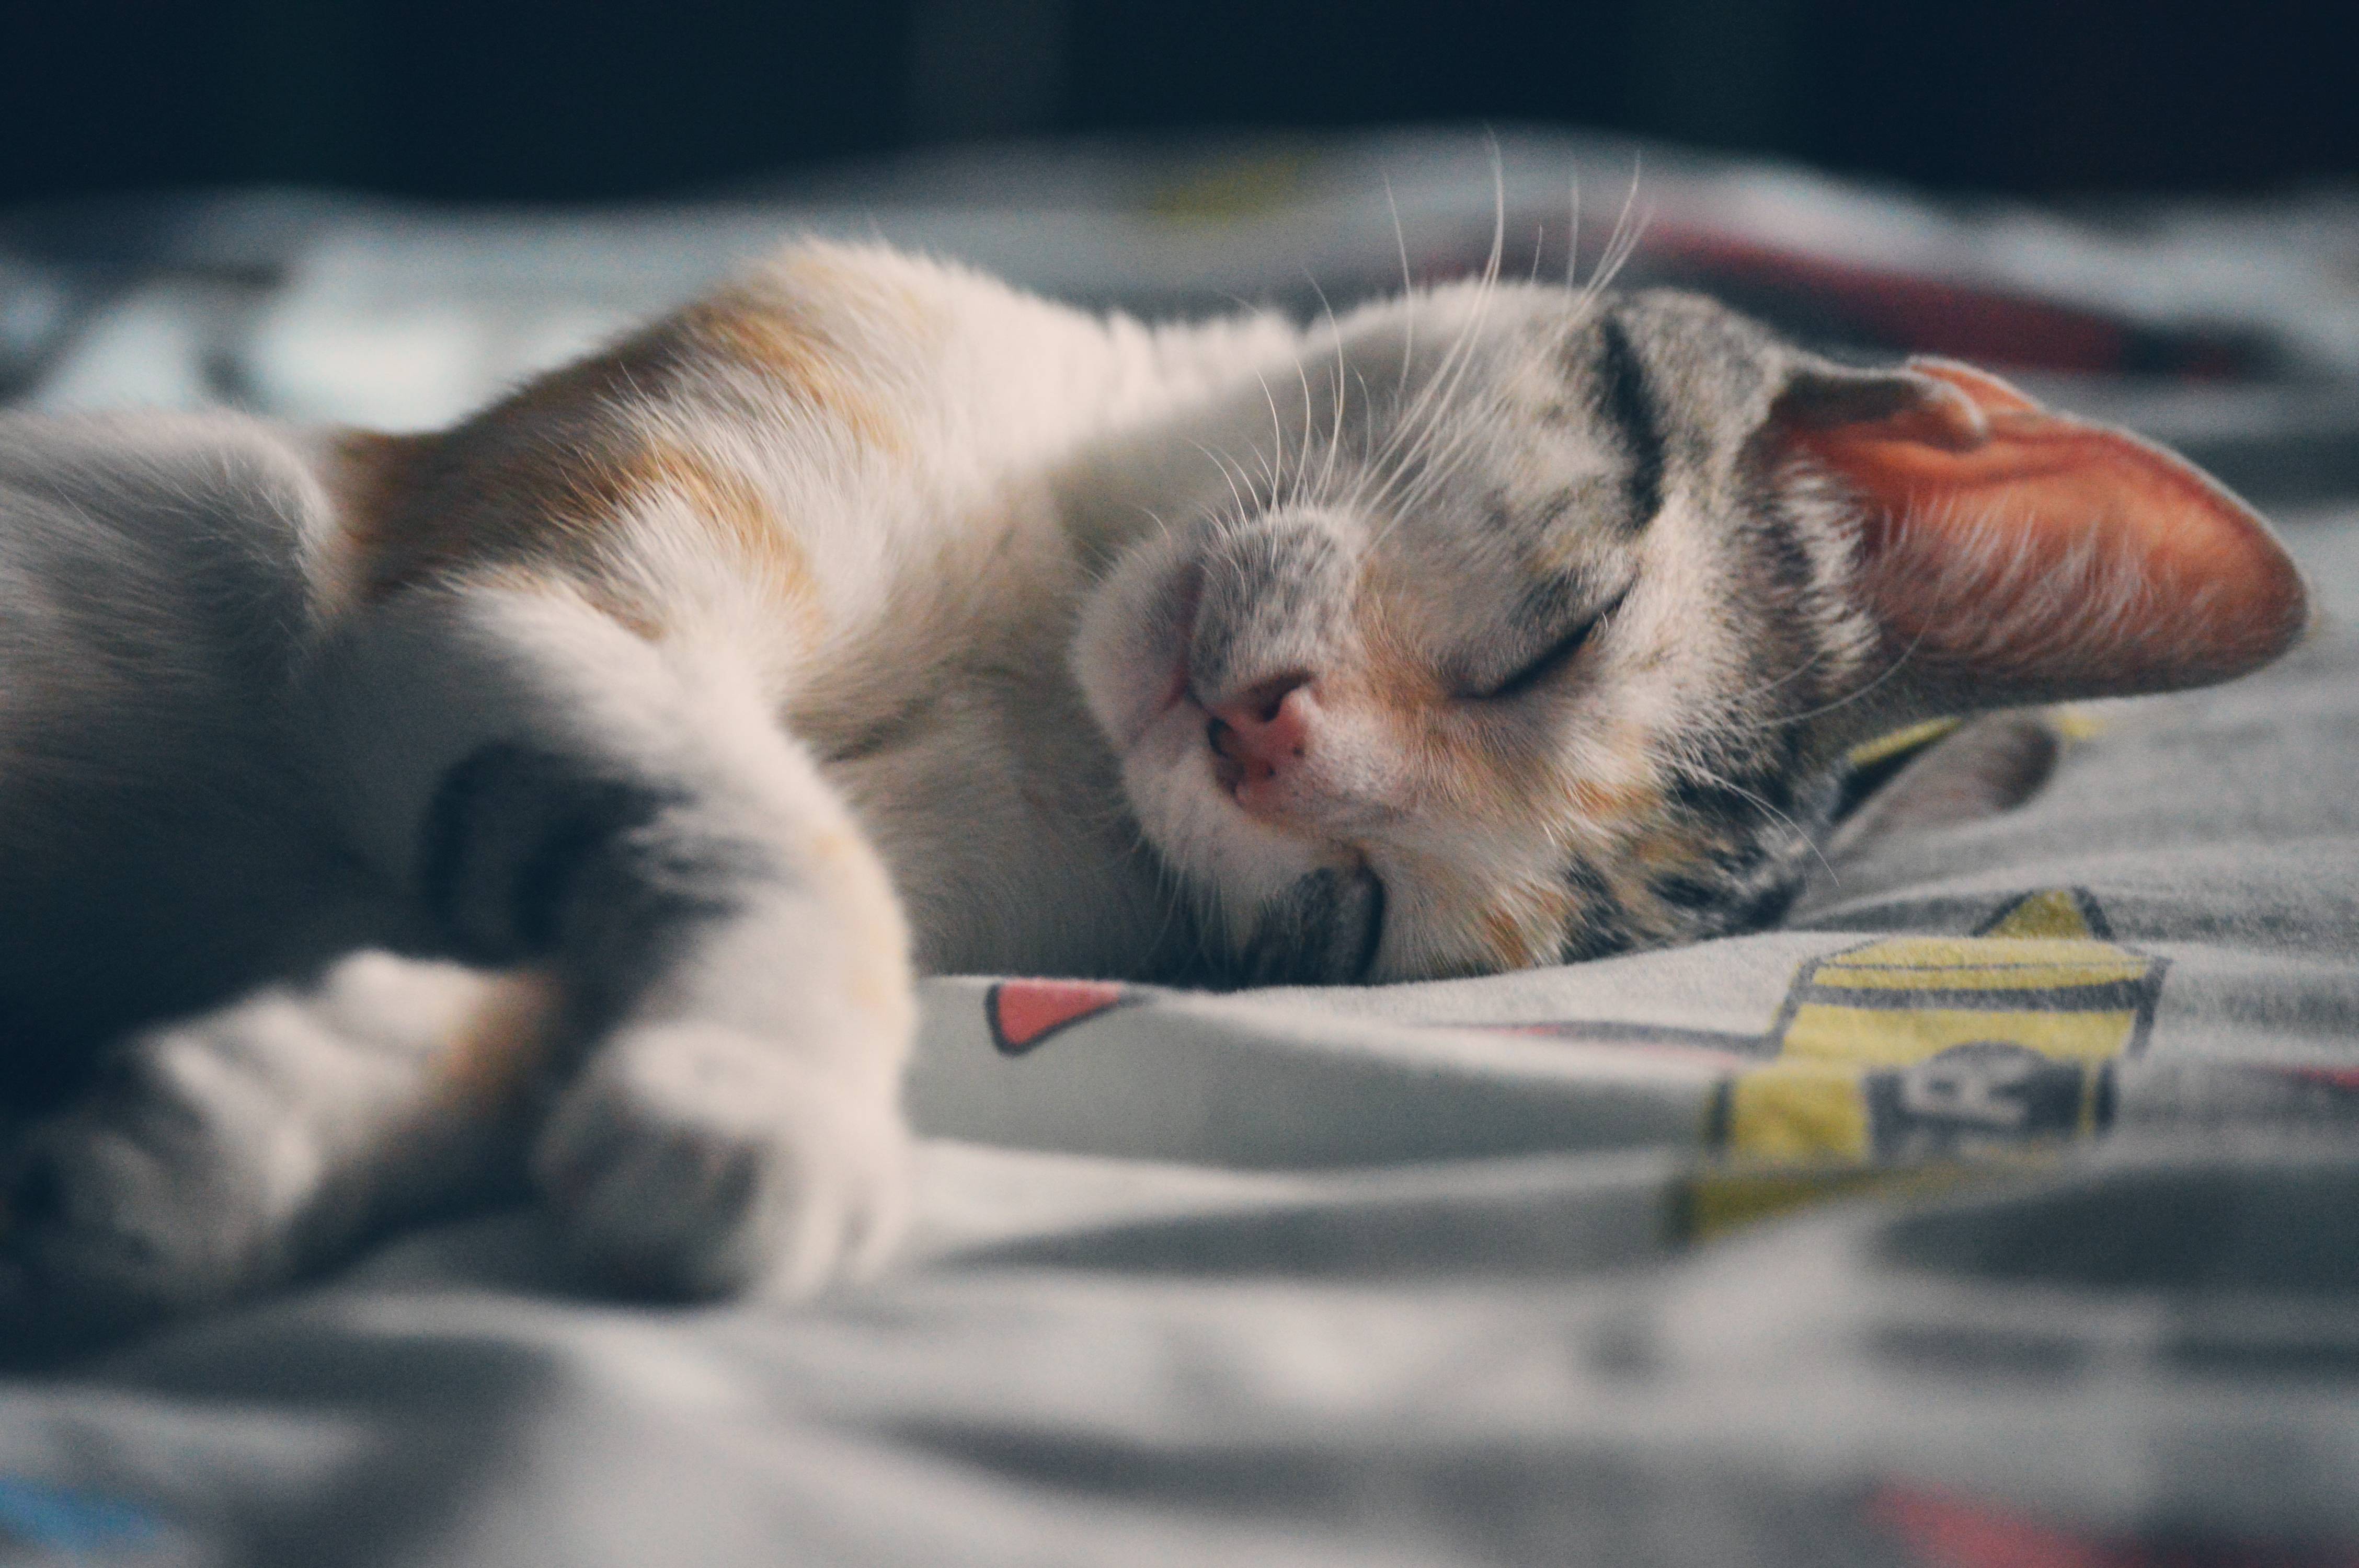 Снятся ли кошкам сны? что говорят учёные